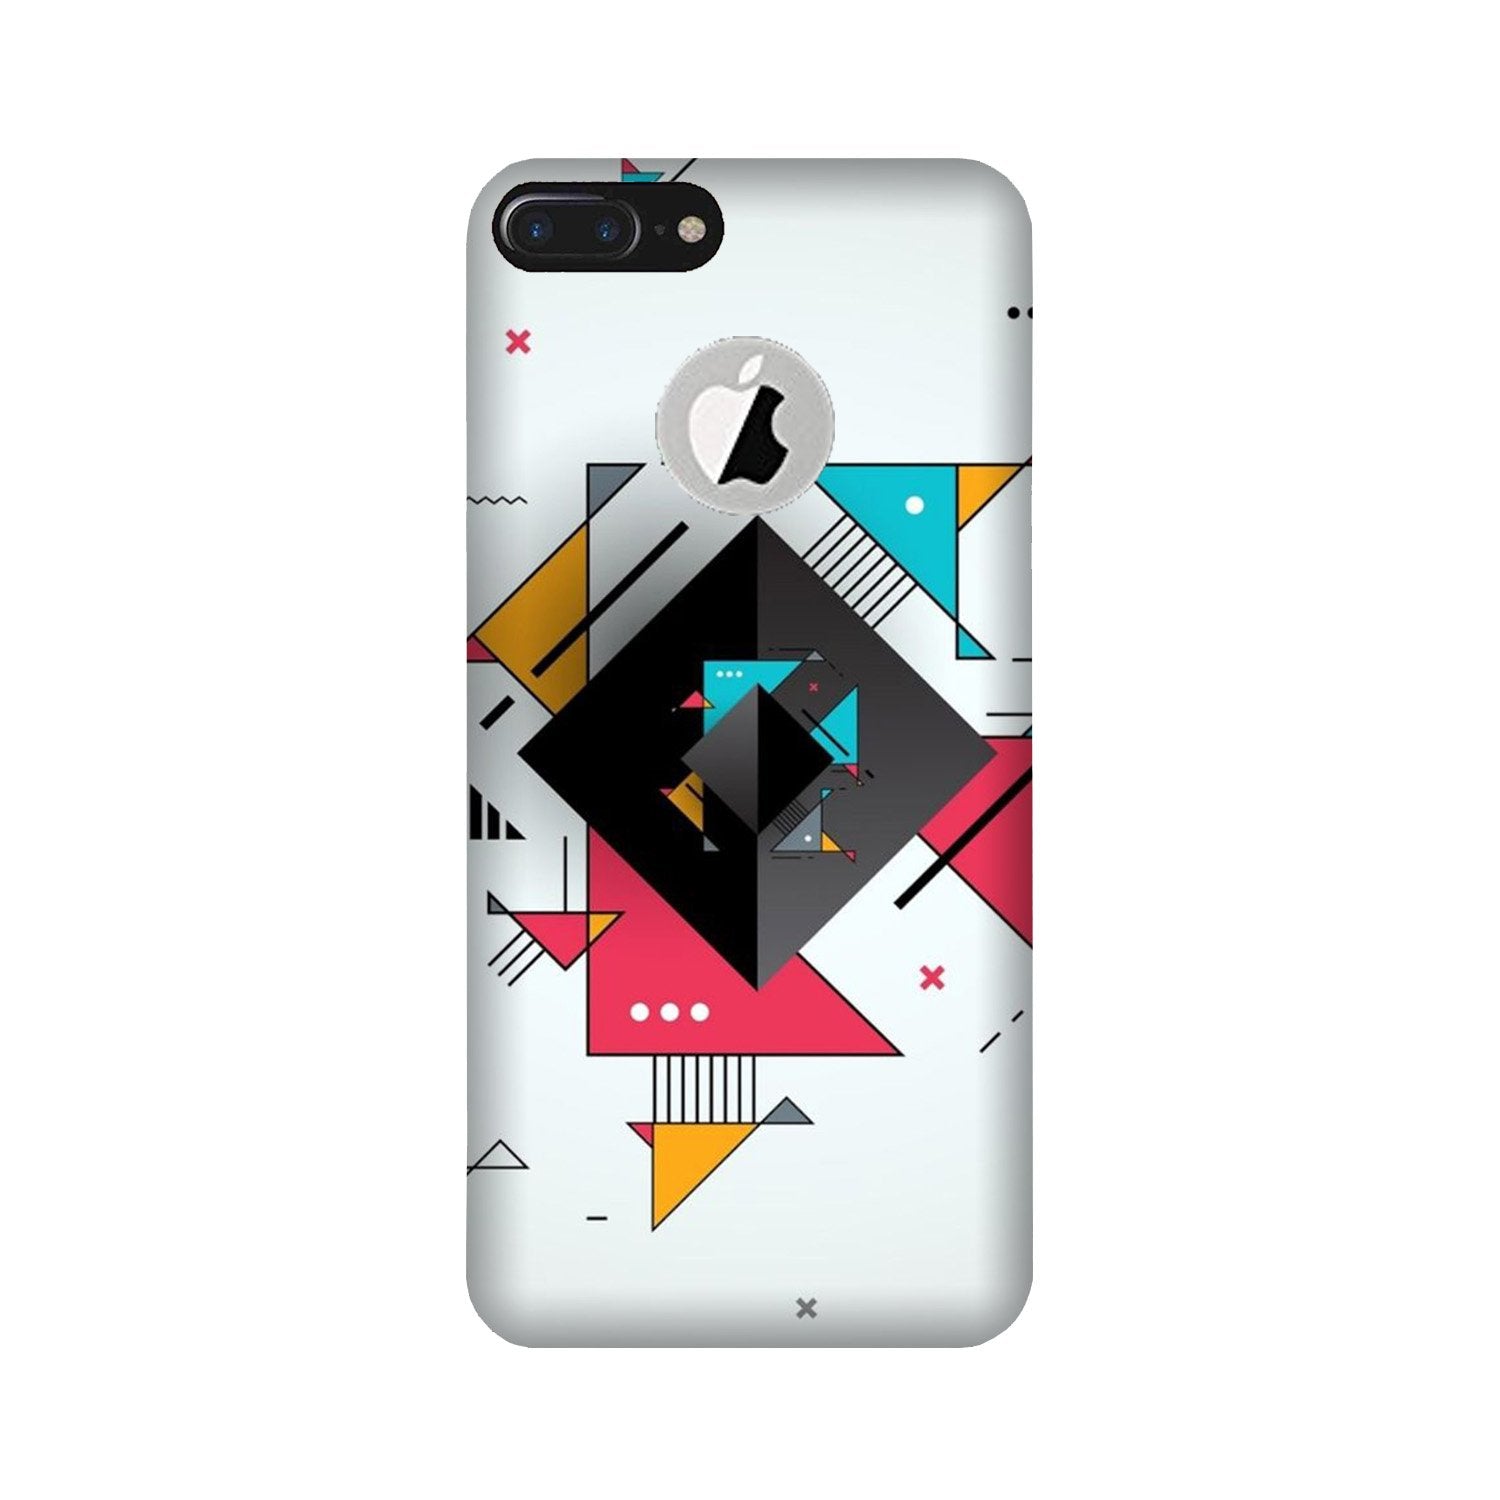 Designer Case for iPhone 7 Plus logo cut (Design No. 276)